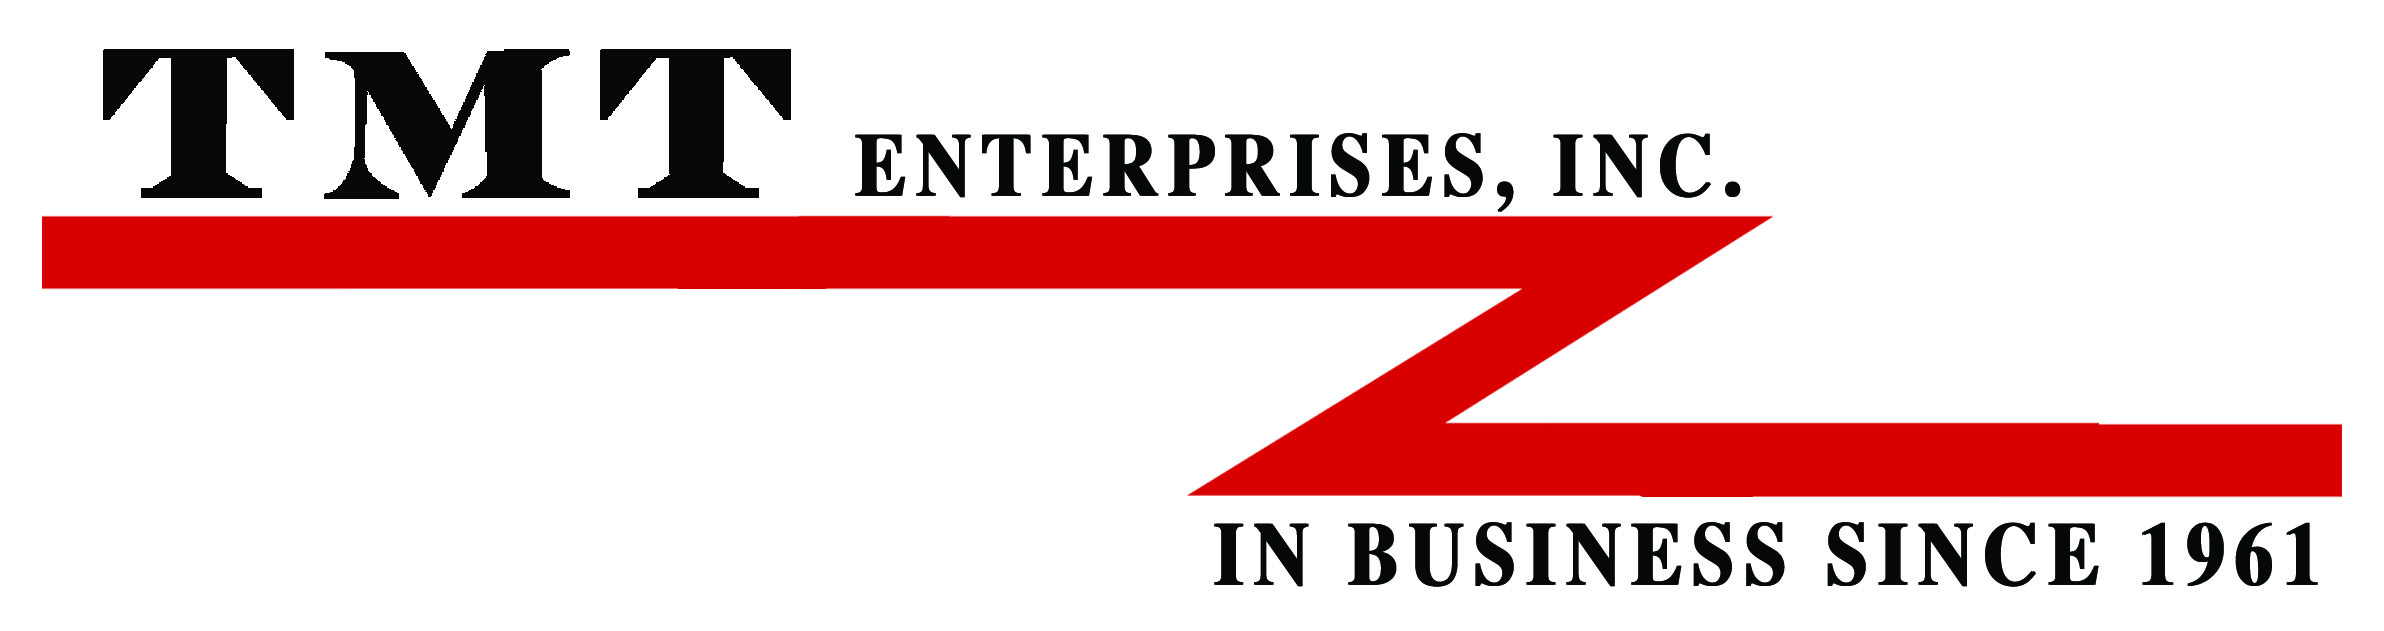 TMT Enterprises News & Events